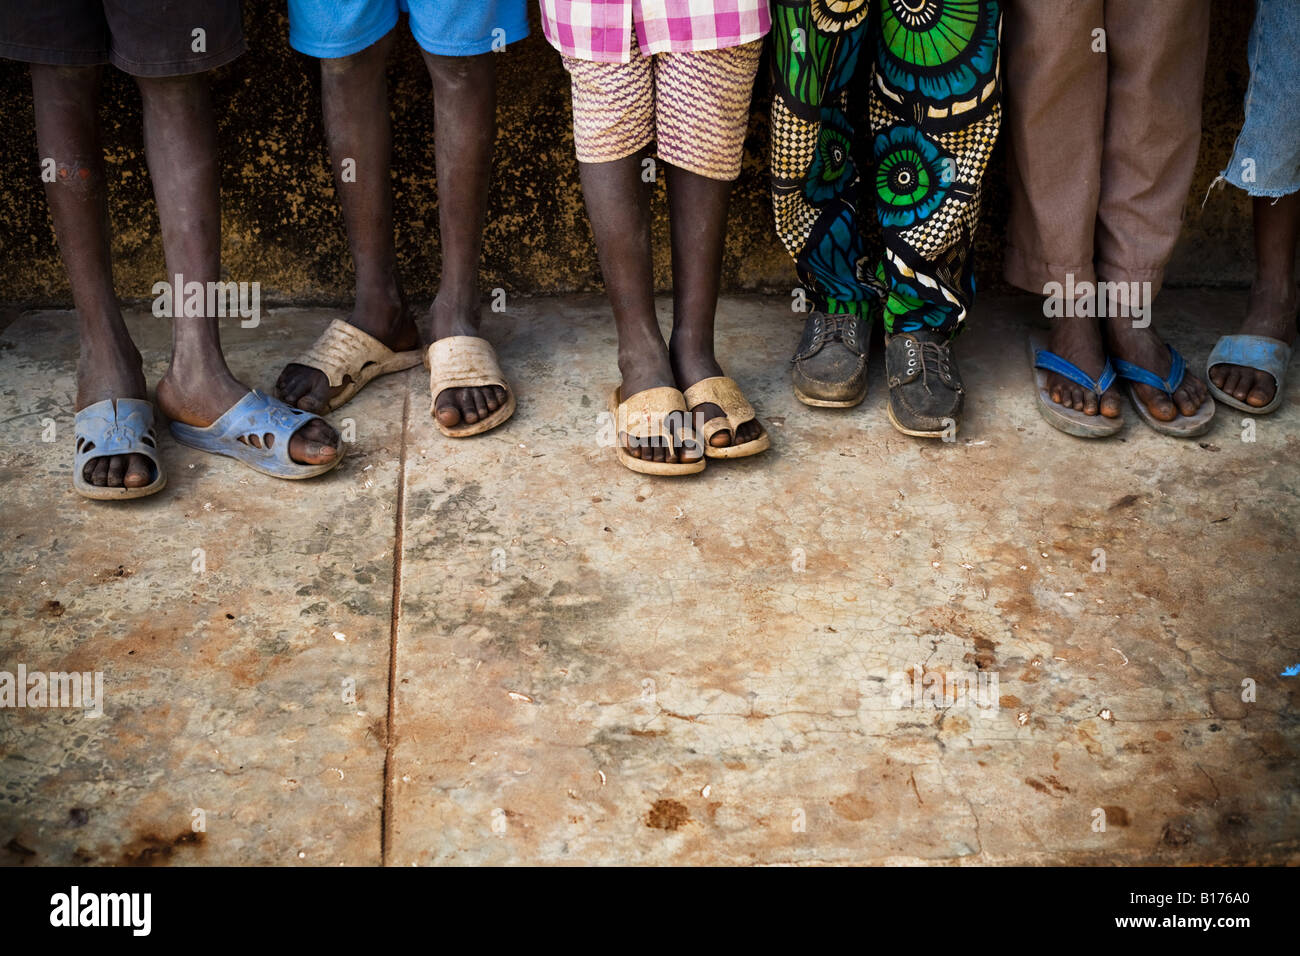 Les enfants attendent en ligne pour recevoir de wormer pilules au Nyassia école primaire dans le village de Nyassia Sénégal Banque D'Images